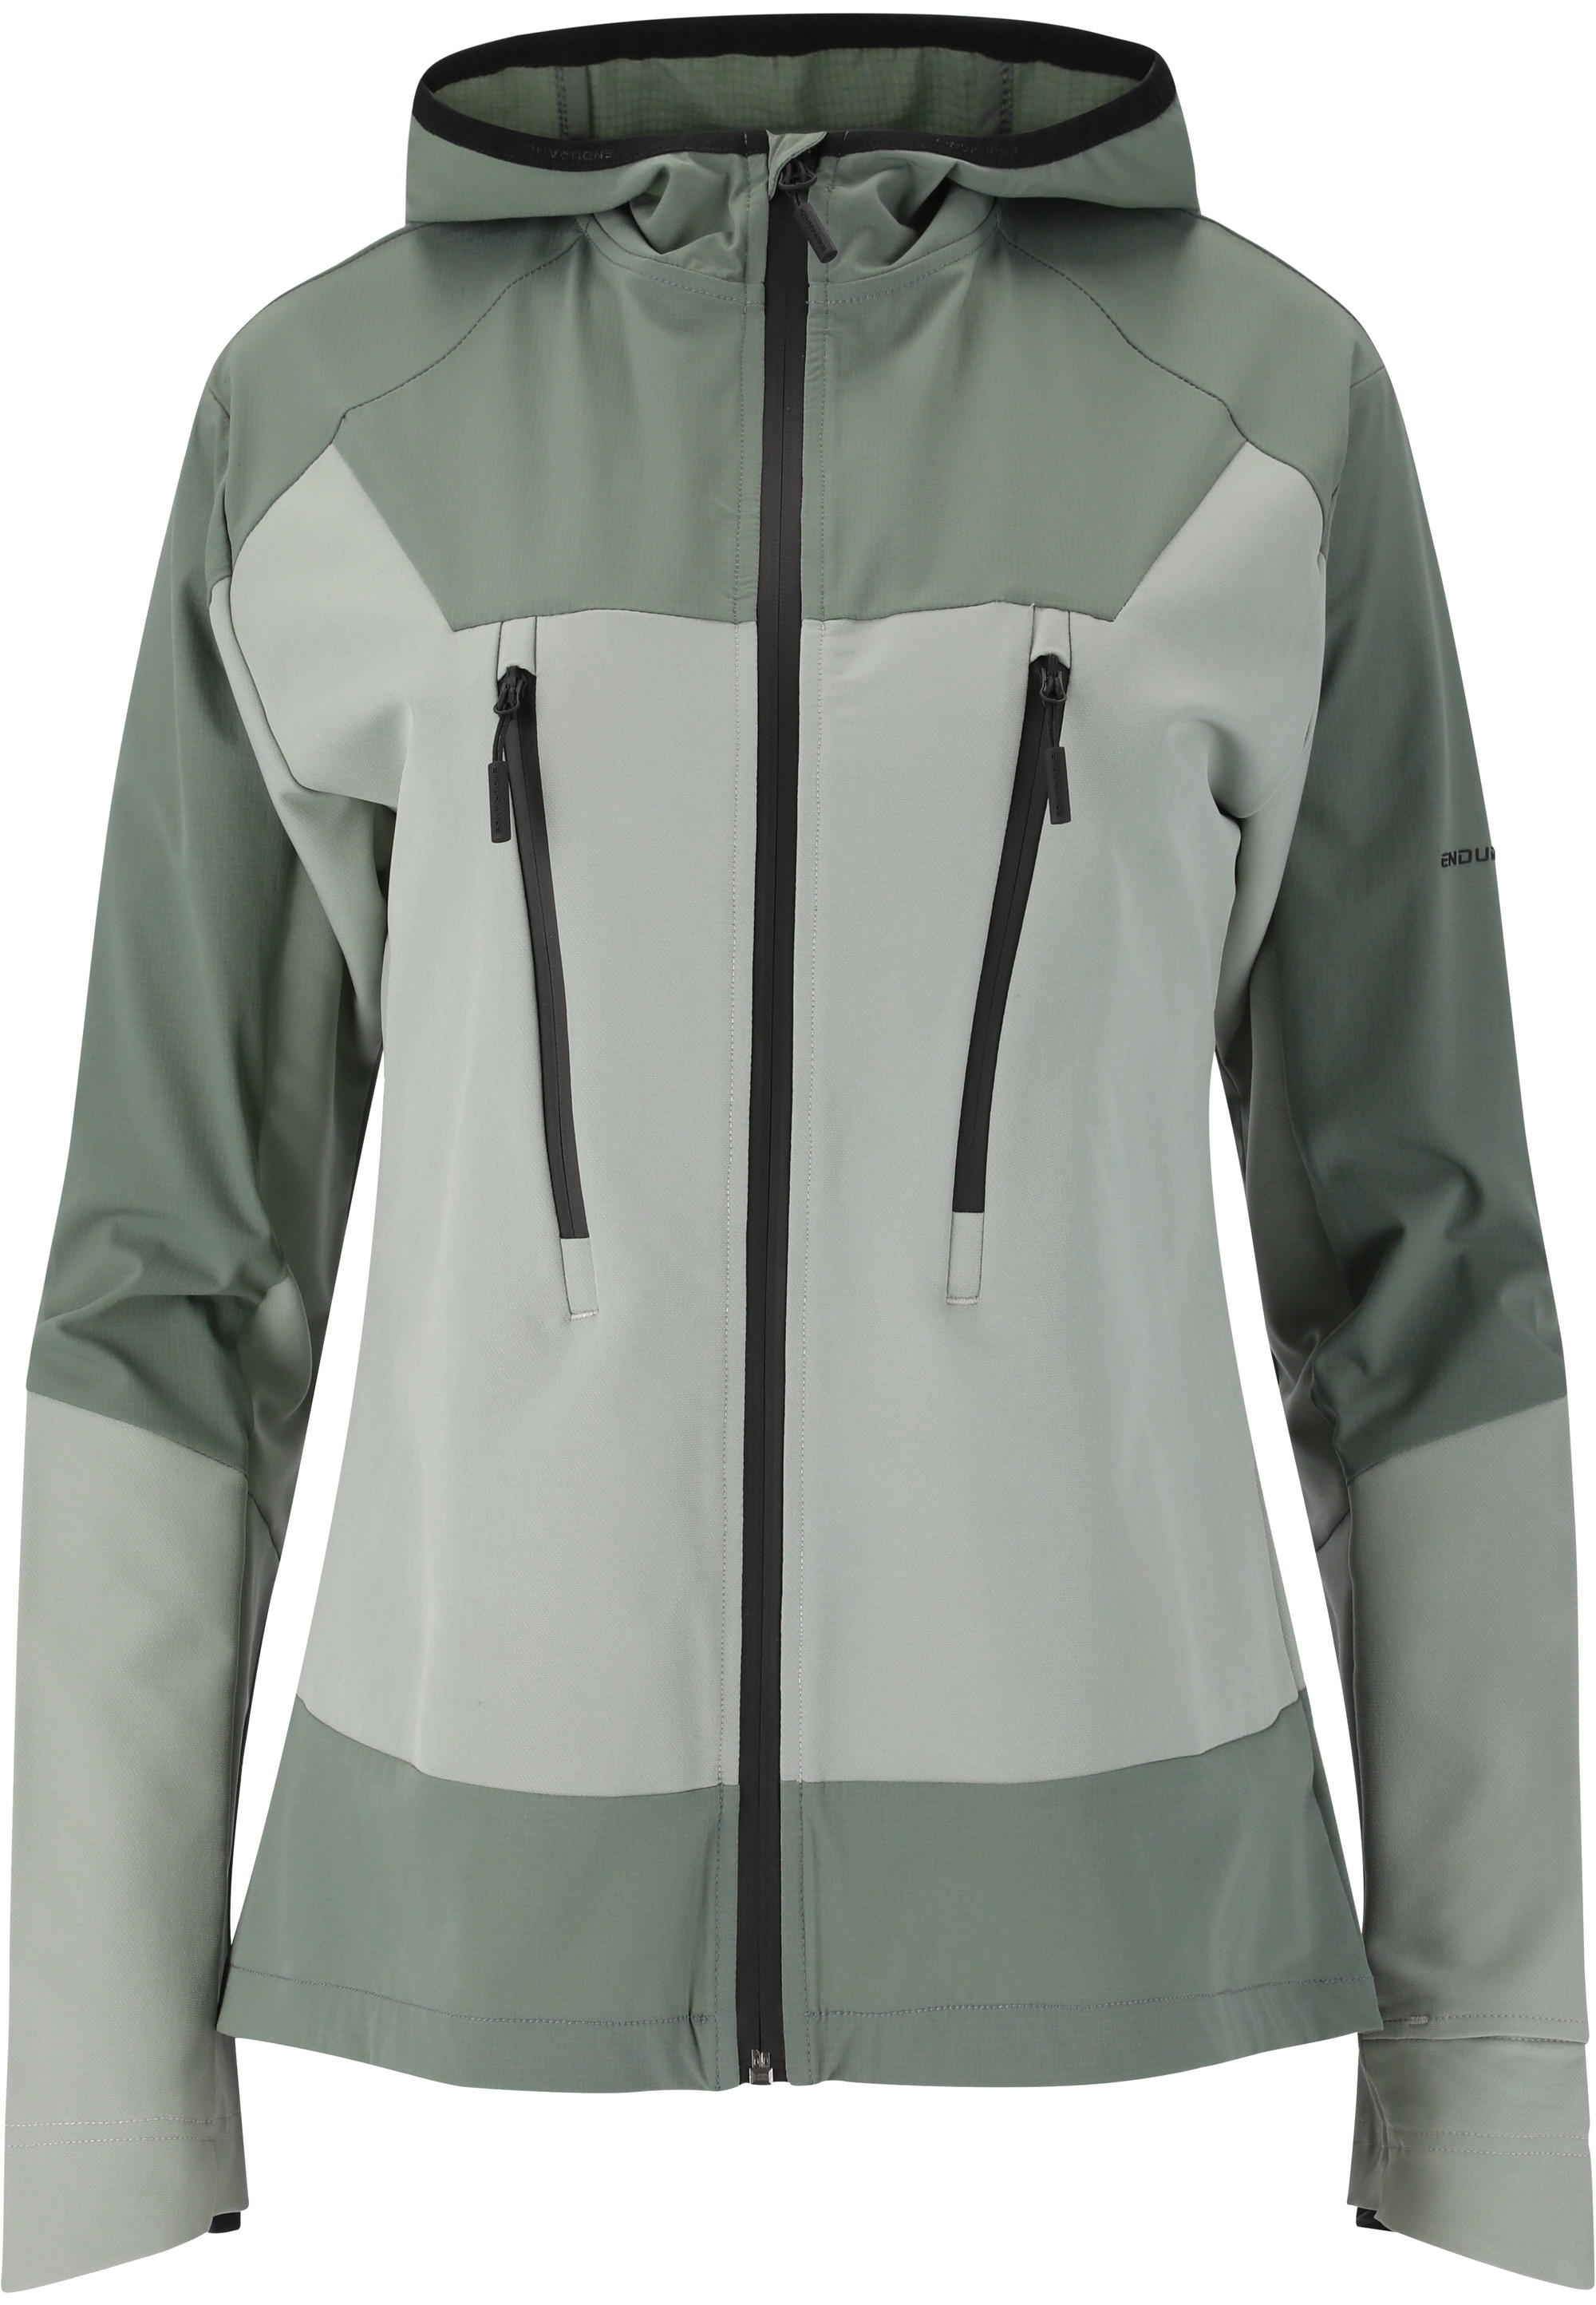 Спортивная куртка Endurance Telly , цвет 3130 Desert Green спортивная куртка endurance telly цвет 1002 white